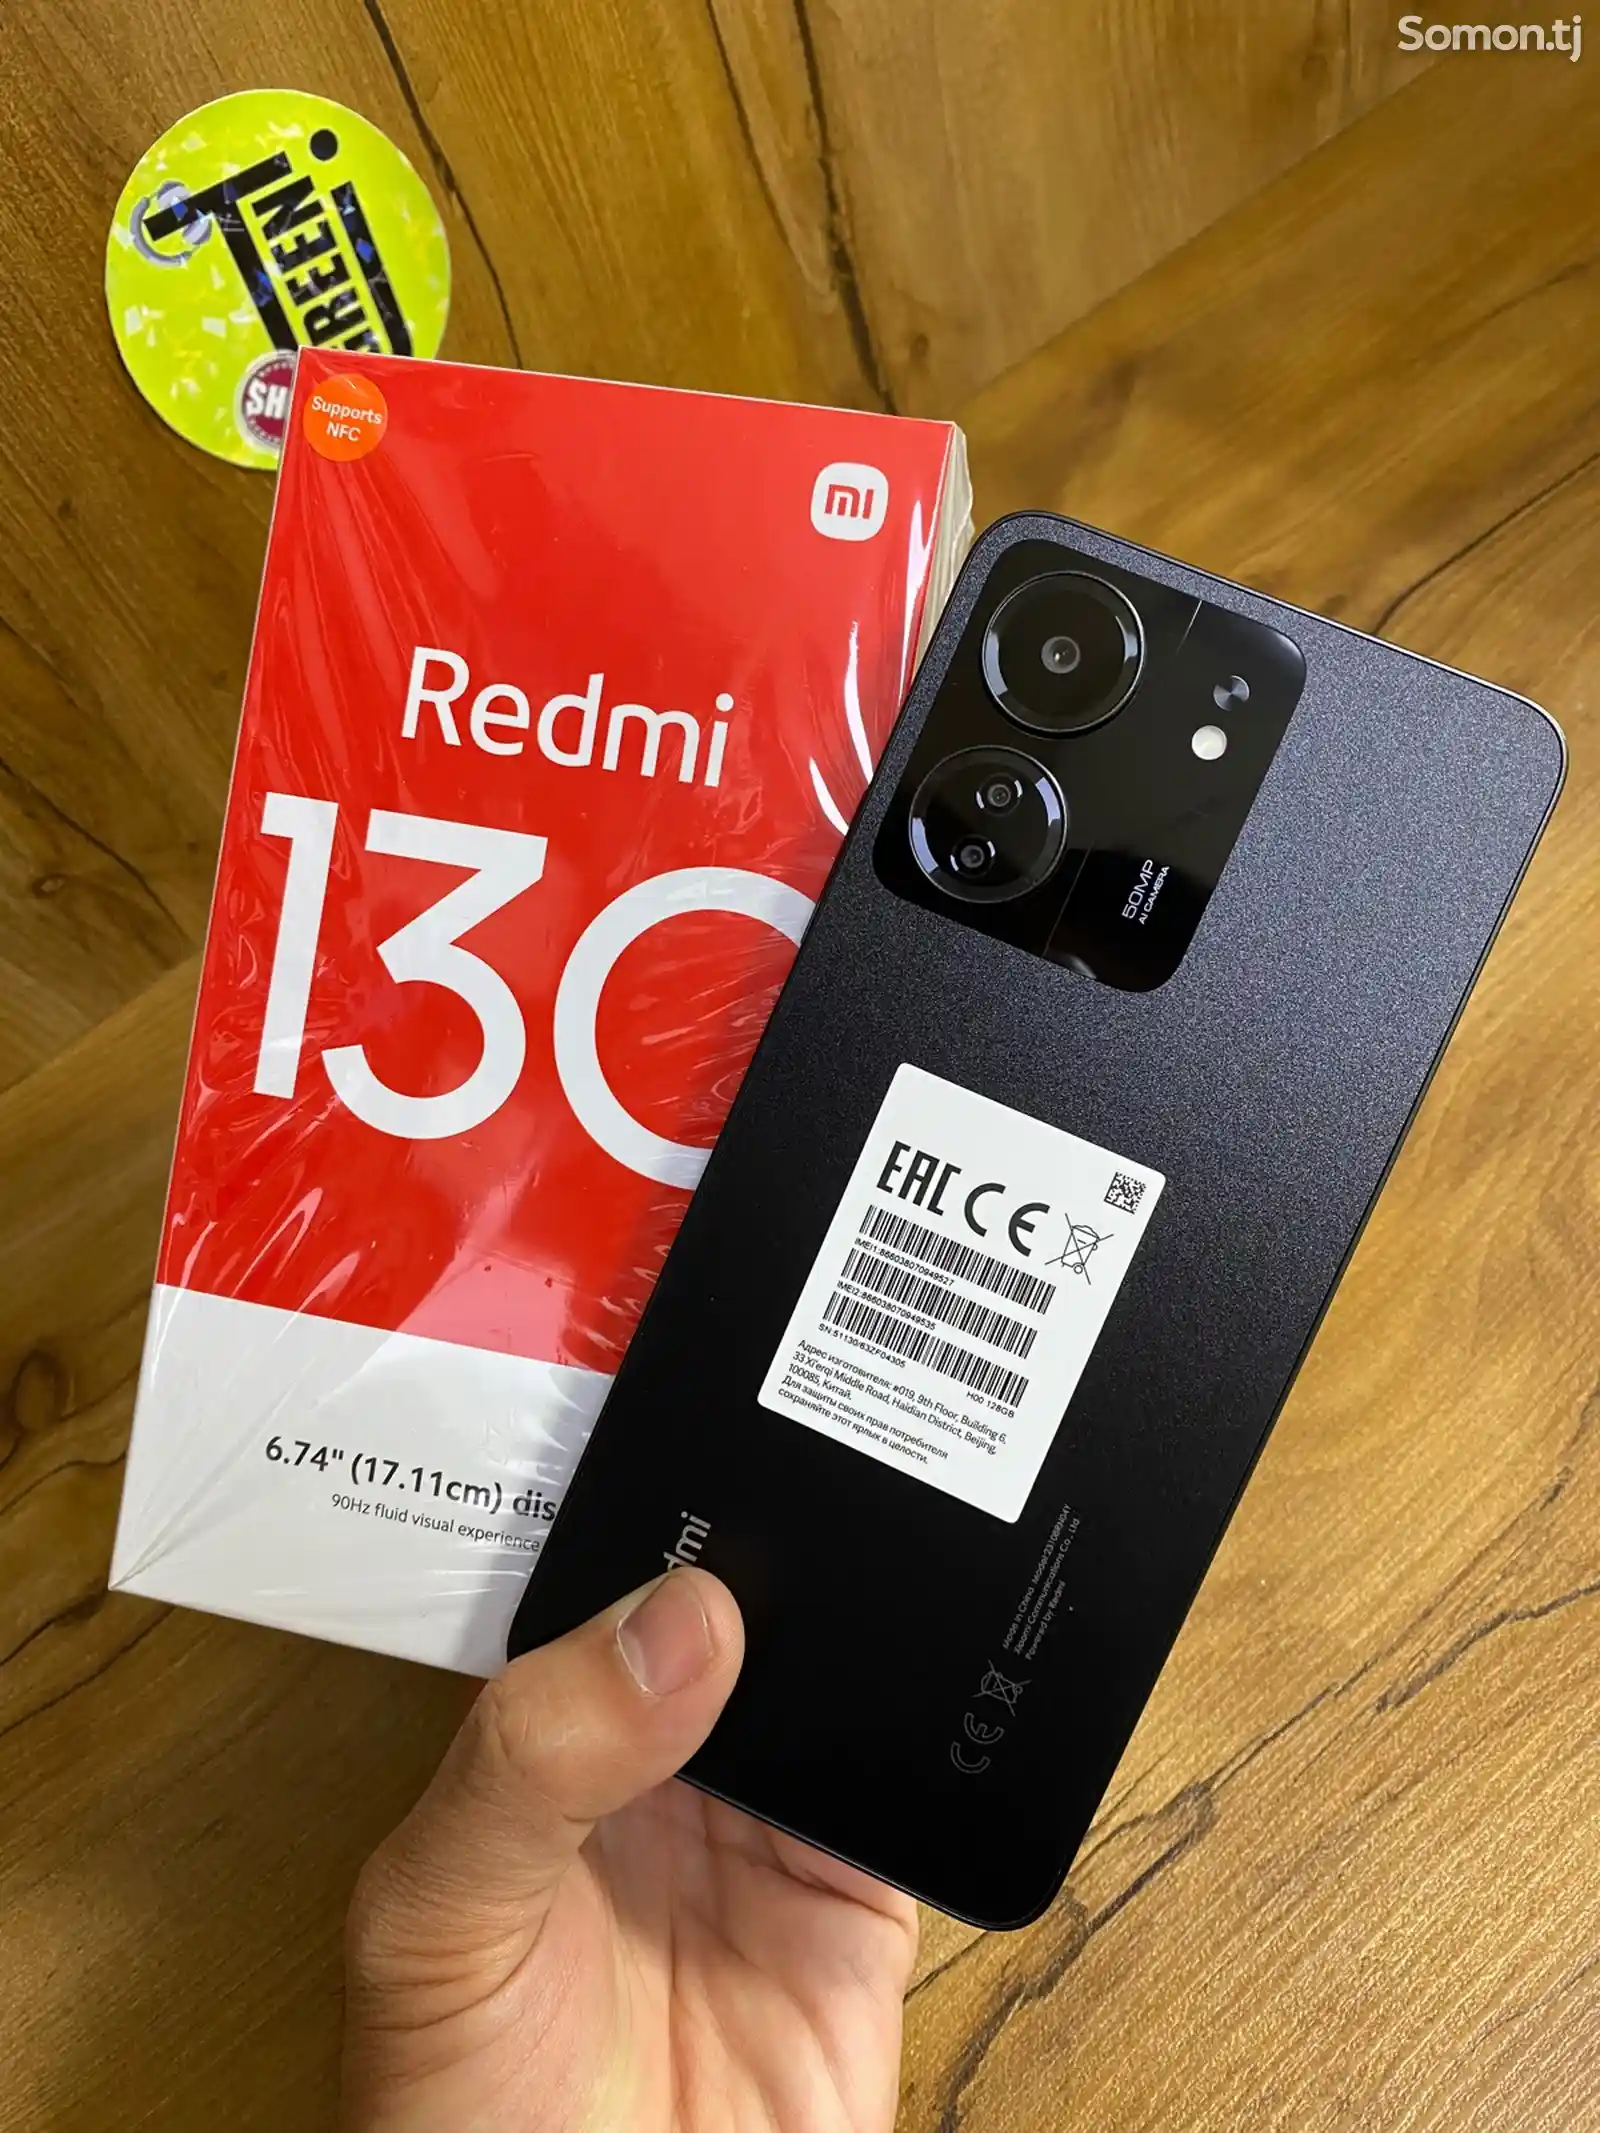 Xiaomi Redmi 13C-1